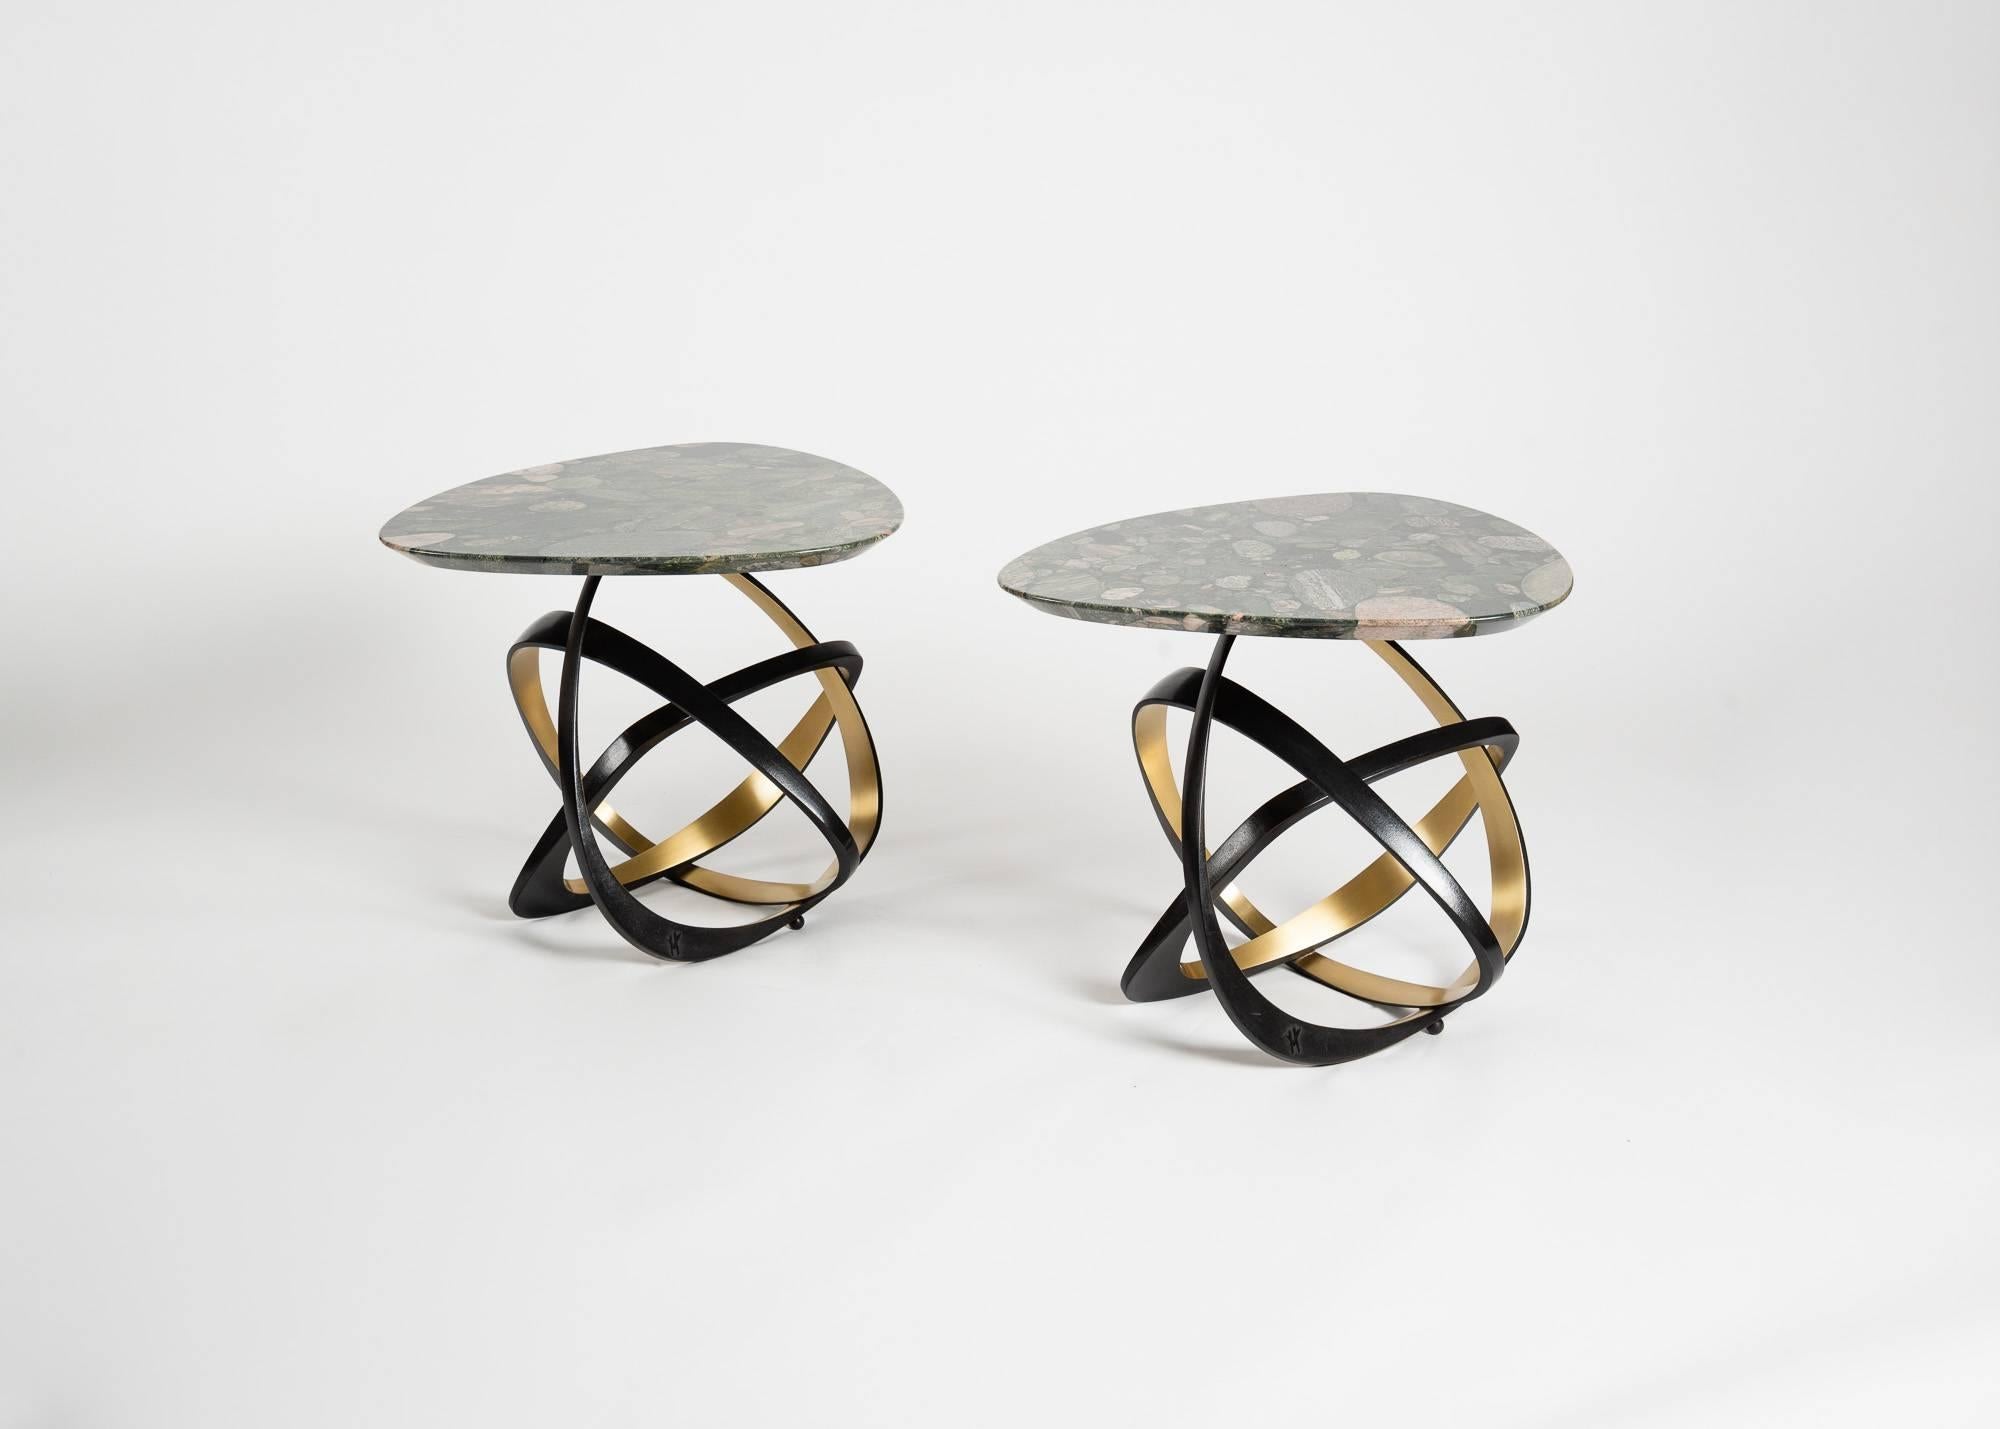 Cette table contemporaine présente un plateau en marbre de Marinace serti de pierres en croix, ainsi que trois supports en bronze à pans coupés, chacun doté d'une facette en bronze doré. Ces anneaux métalliques dynamiques offrent une esthétique